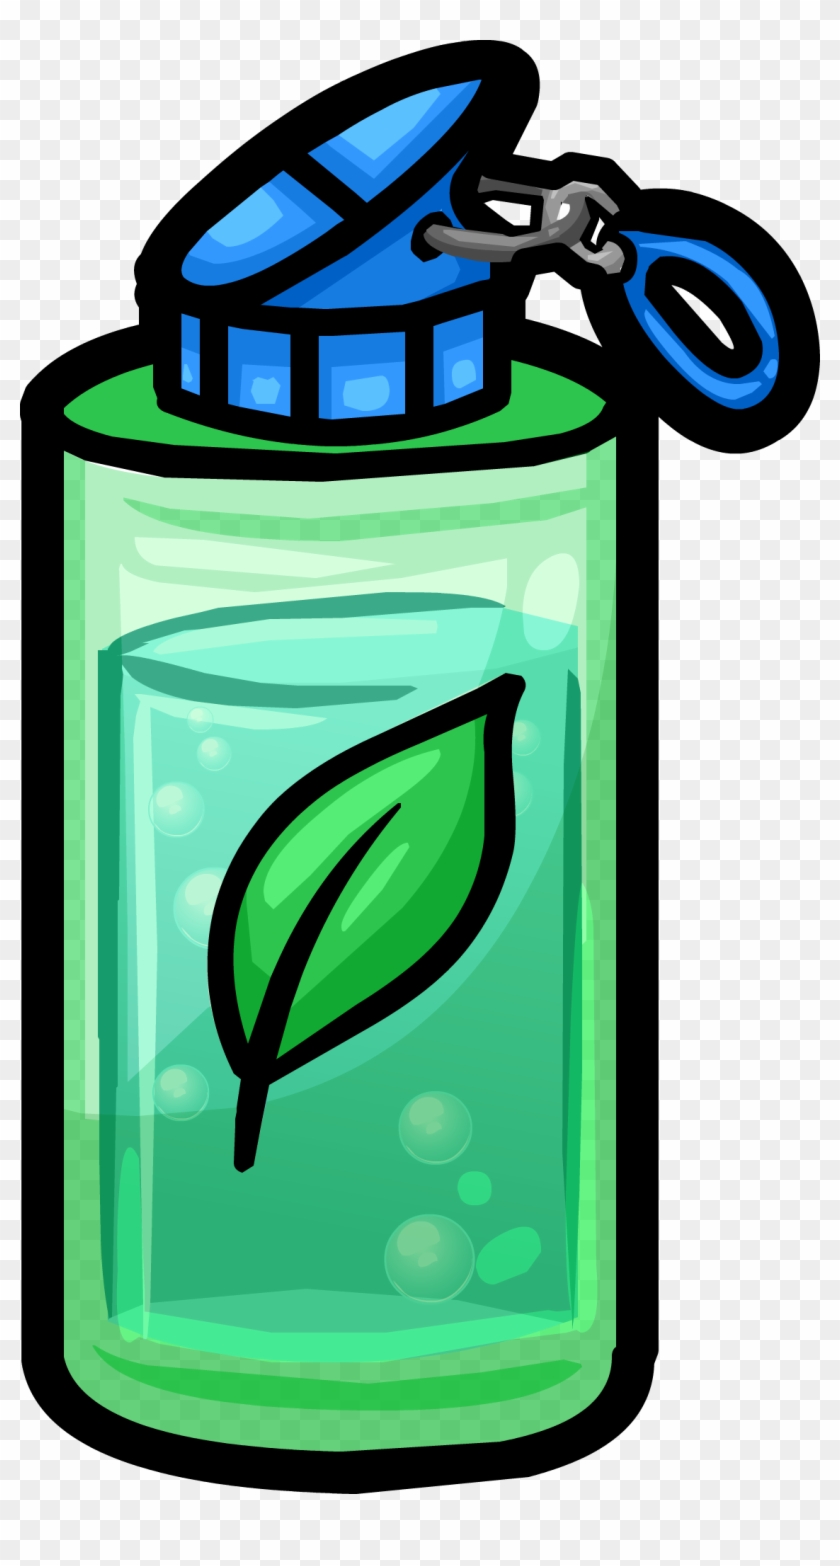 Waterbottle - Green Water Bottle Clipart #692106